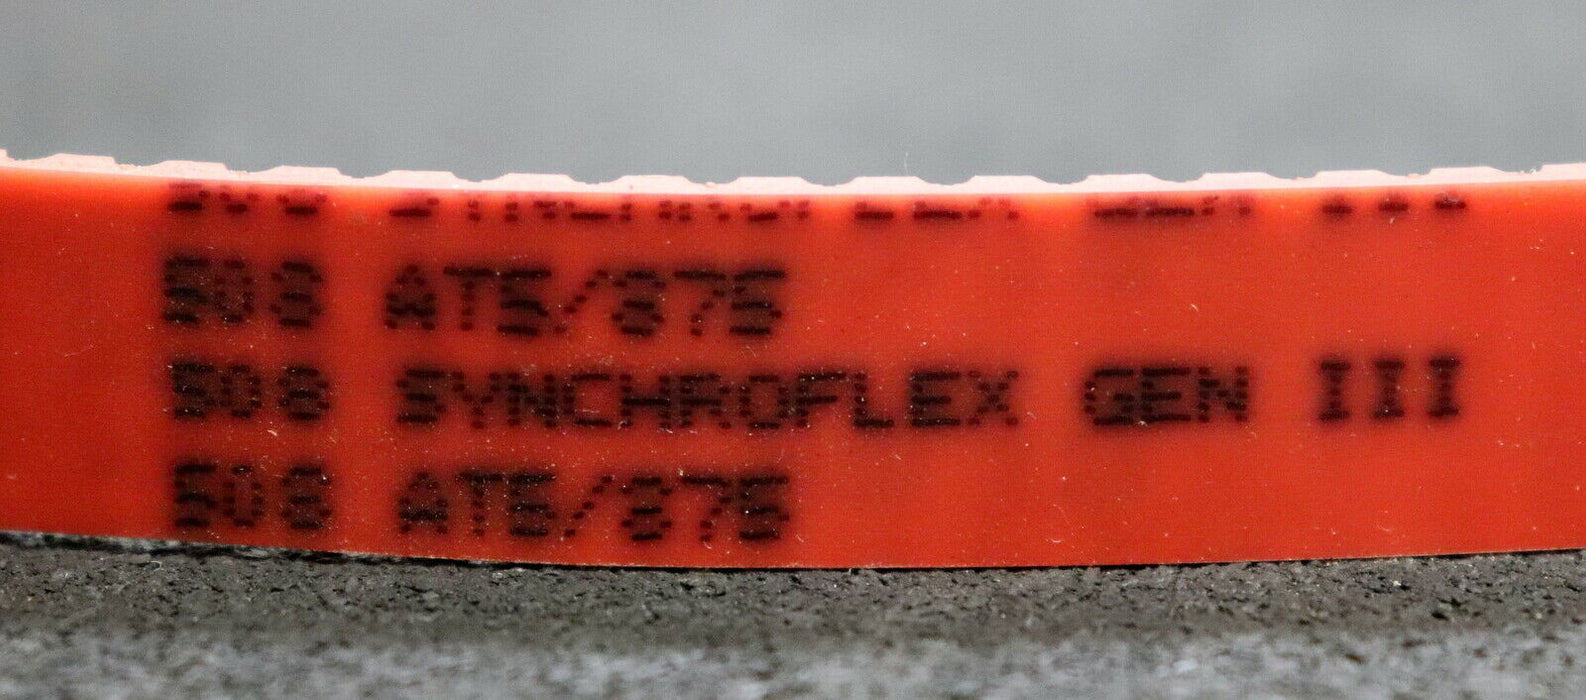 SYNCHROFLEX Zahnriemen GEN III AT 5/875 Länge 875mm Breite 16mm